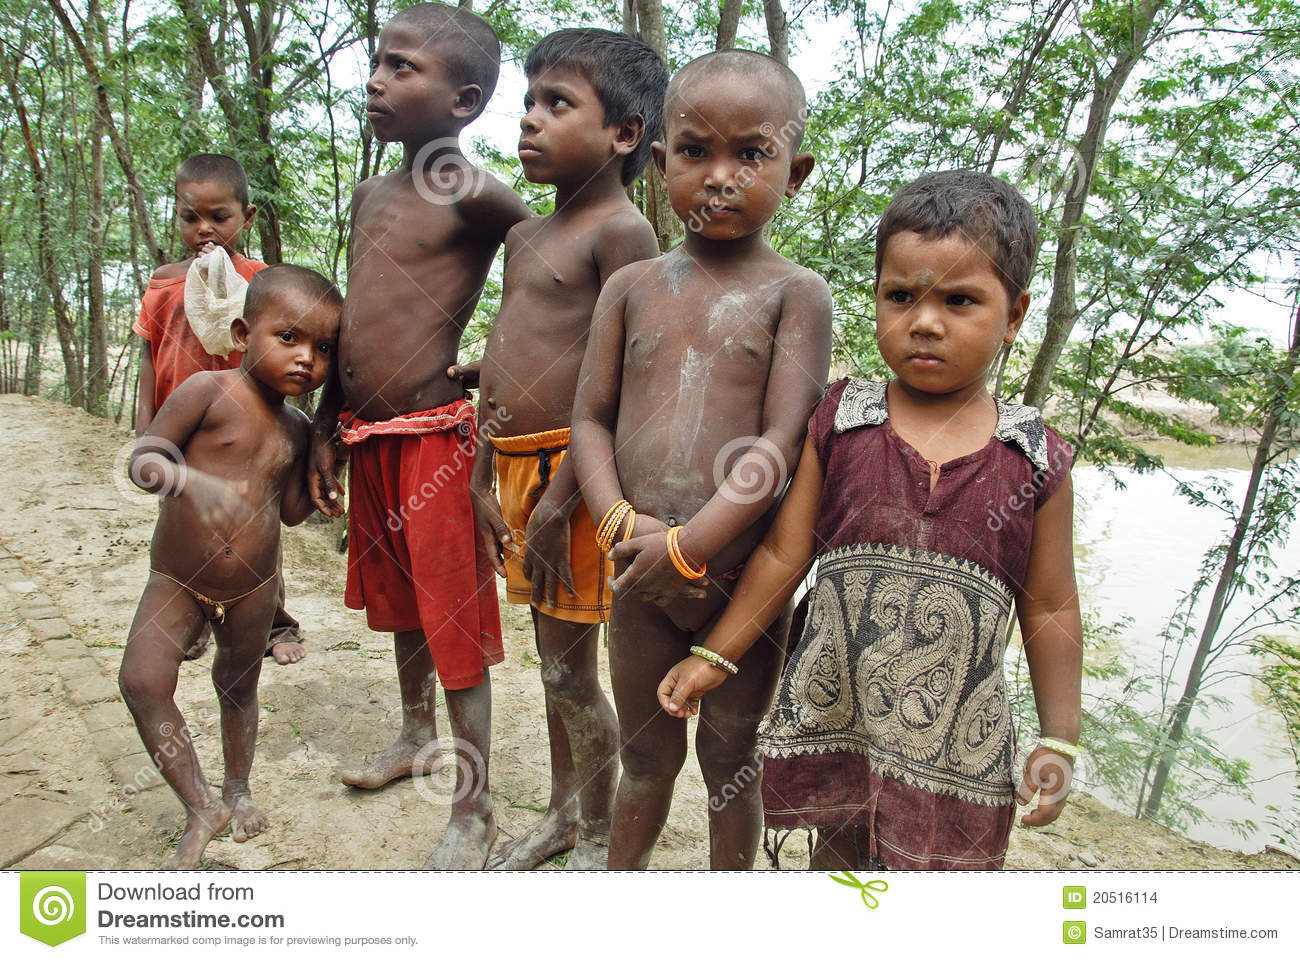 Arme Kinder In Indien Redaktionelles Stockbild. Bild Von Jungen - 20516114 ganzes Arme Kinder Bilder